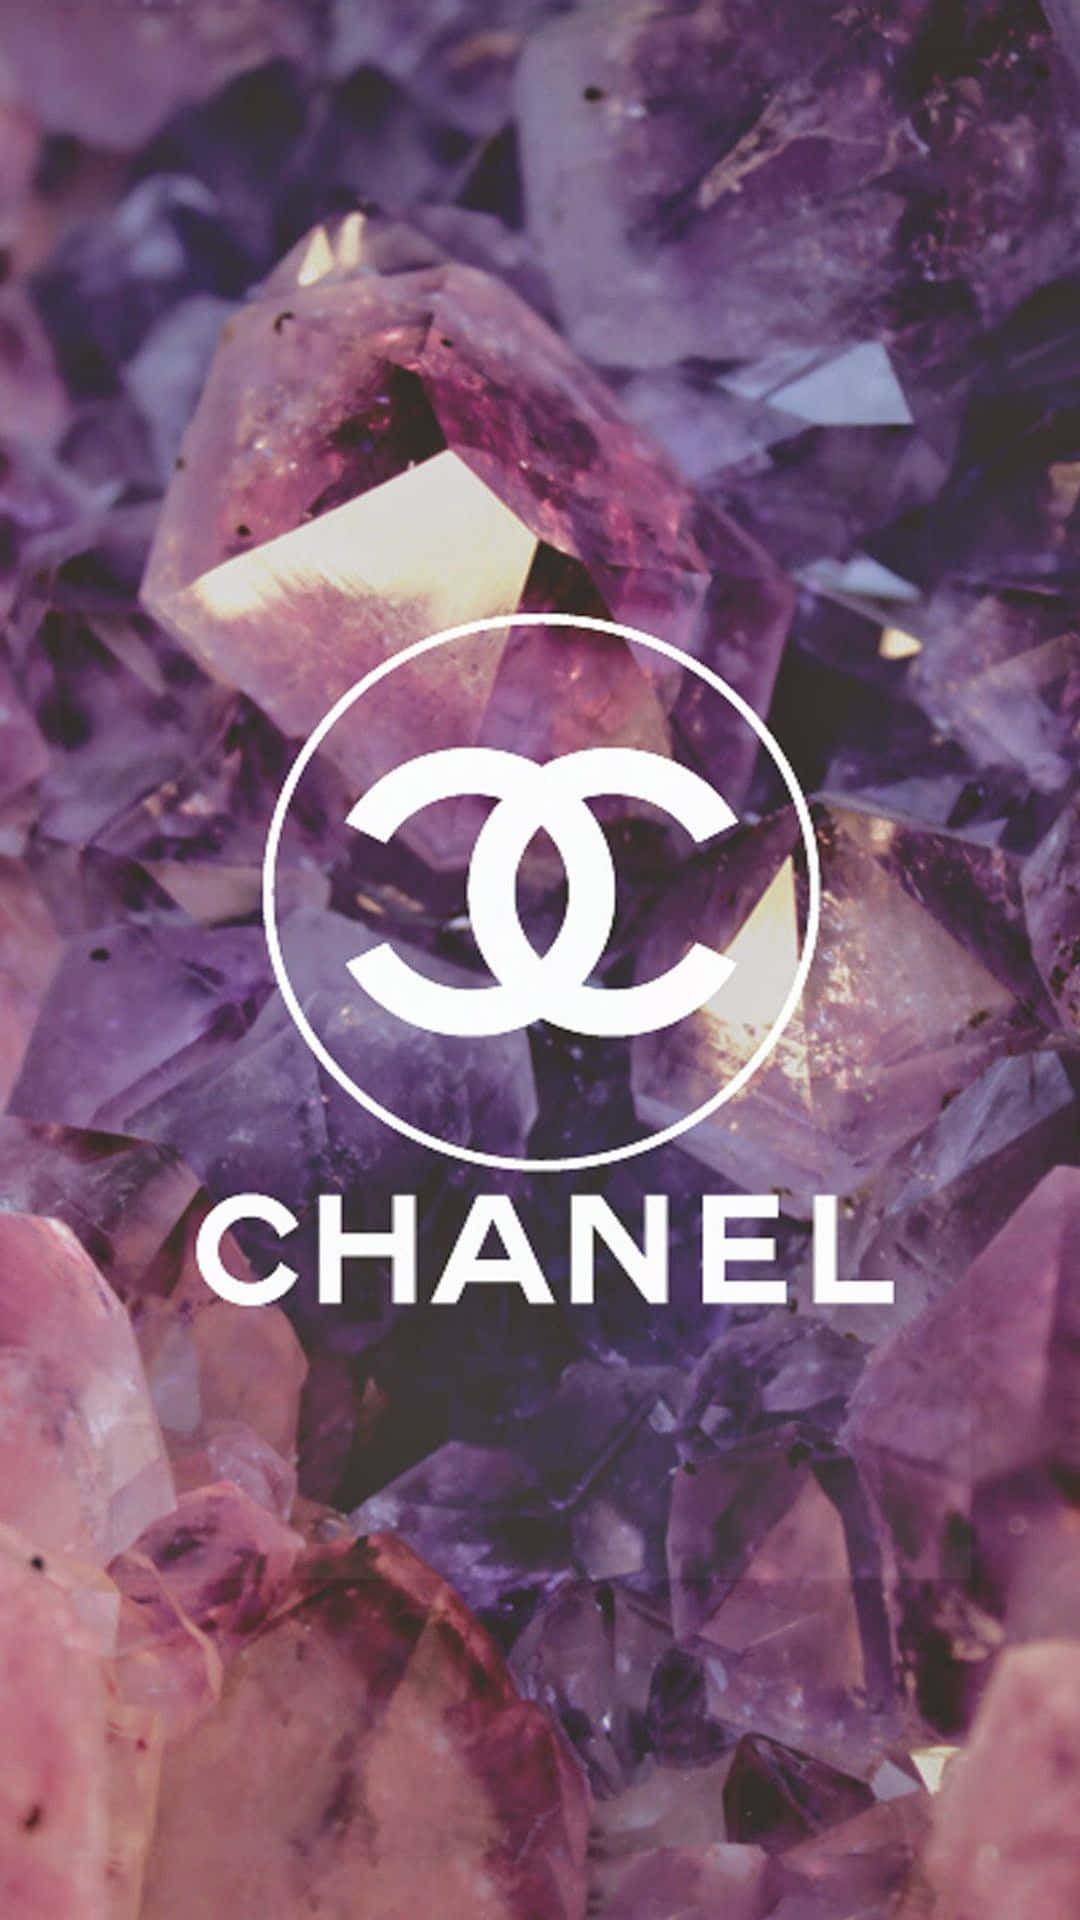 Trædind I Luksus Med Chanel.